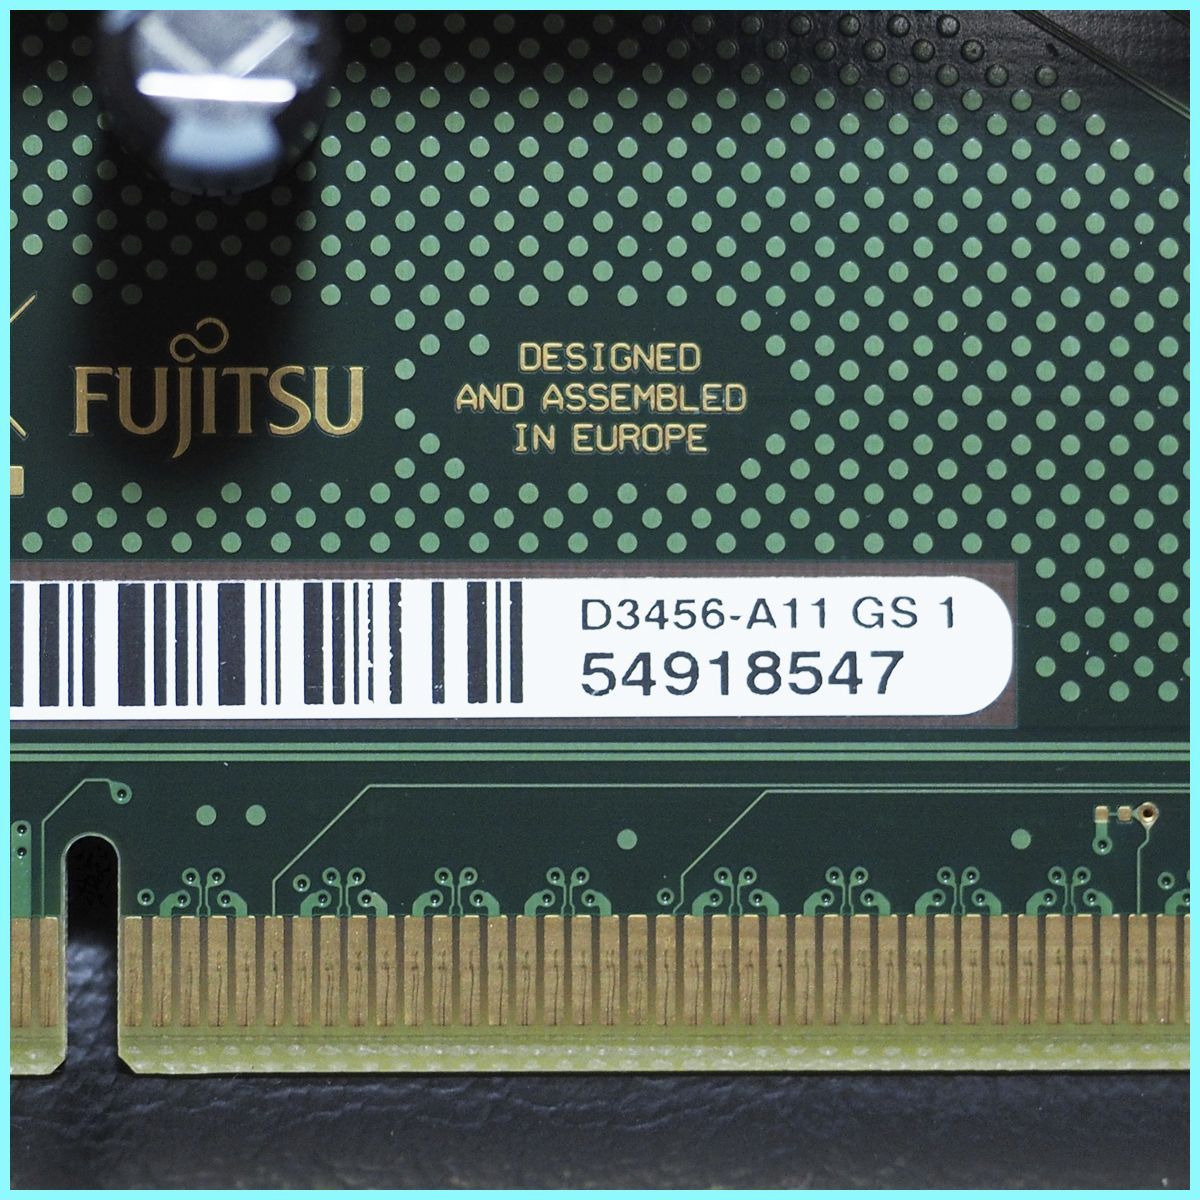 富士通 ESPRIMO D586/MX・D586/PX・D587/R・D587/RX・D587/SX・D588/VX・CELSIUS J550  PCIE ライザーカード D3456-A11 GS 1